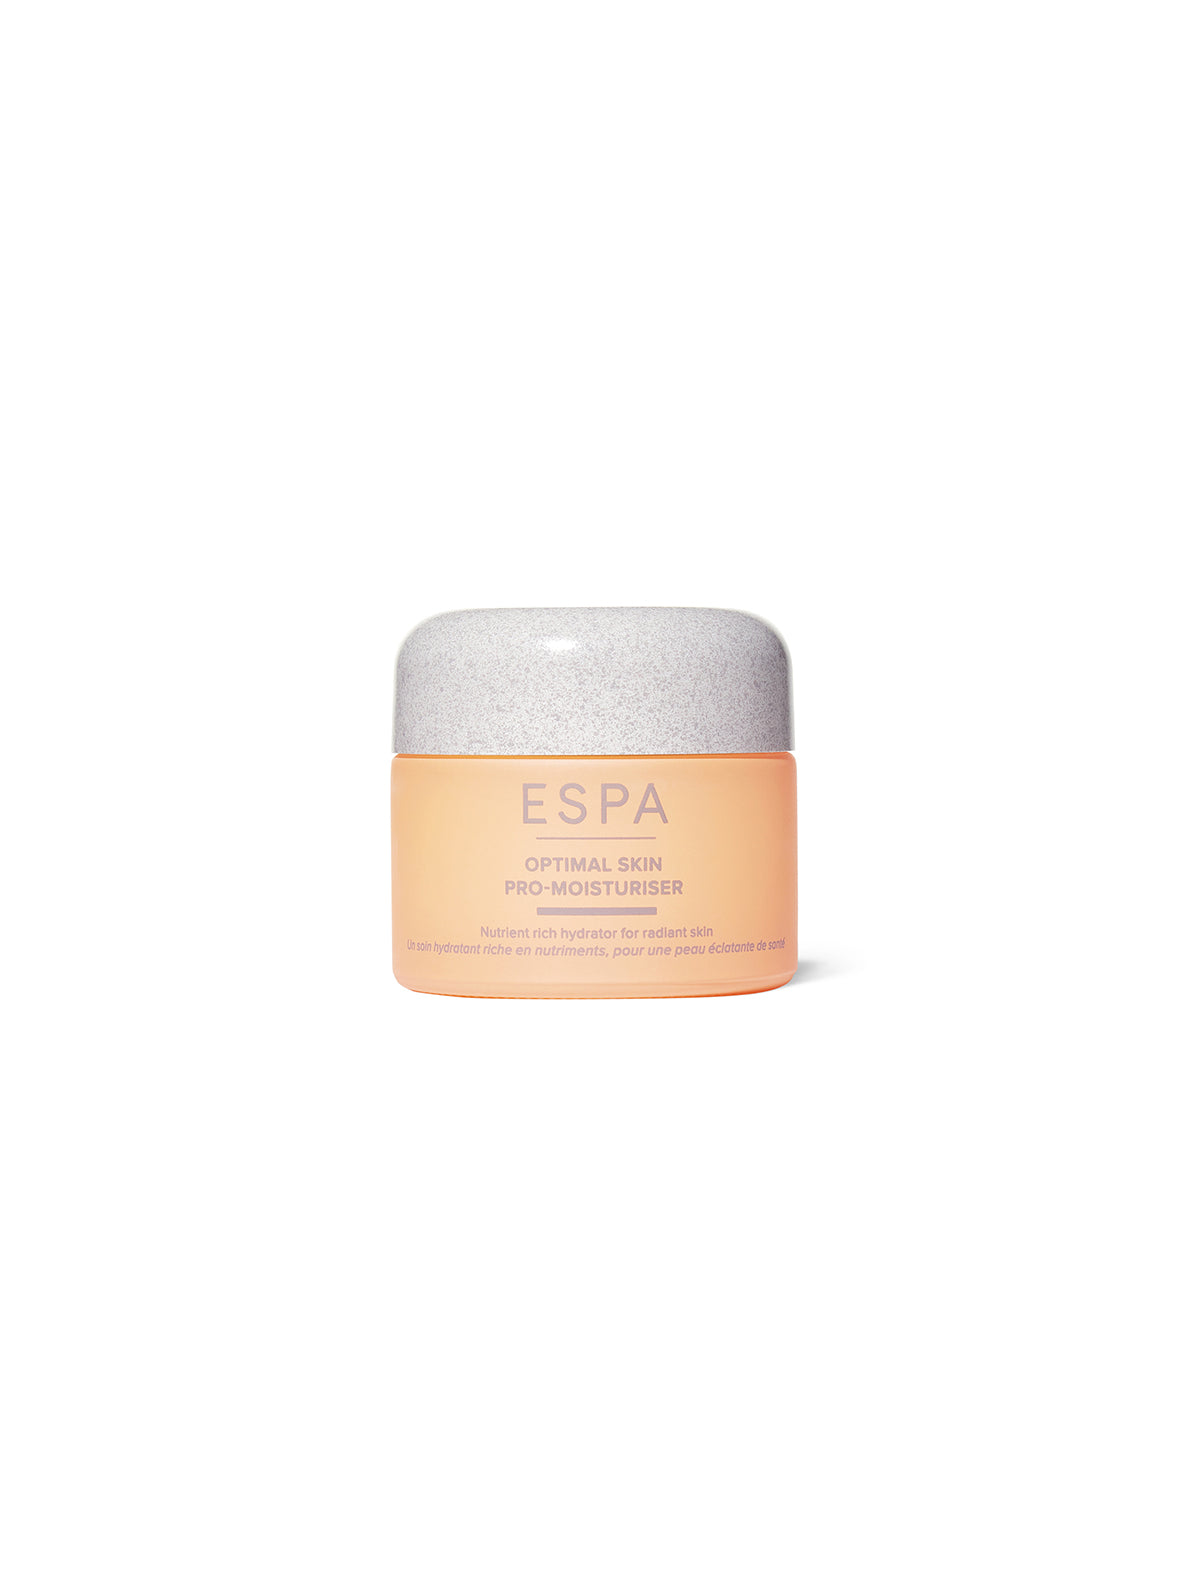 ESPA Optimal Skin Pro-Moisturiser (55ml)